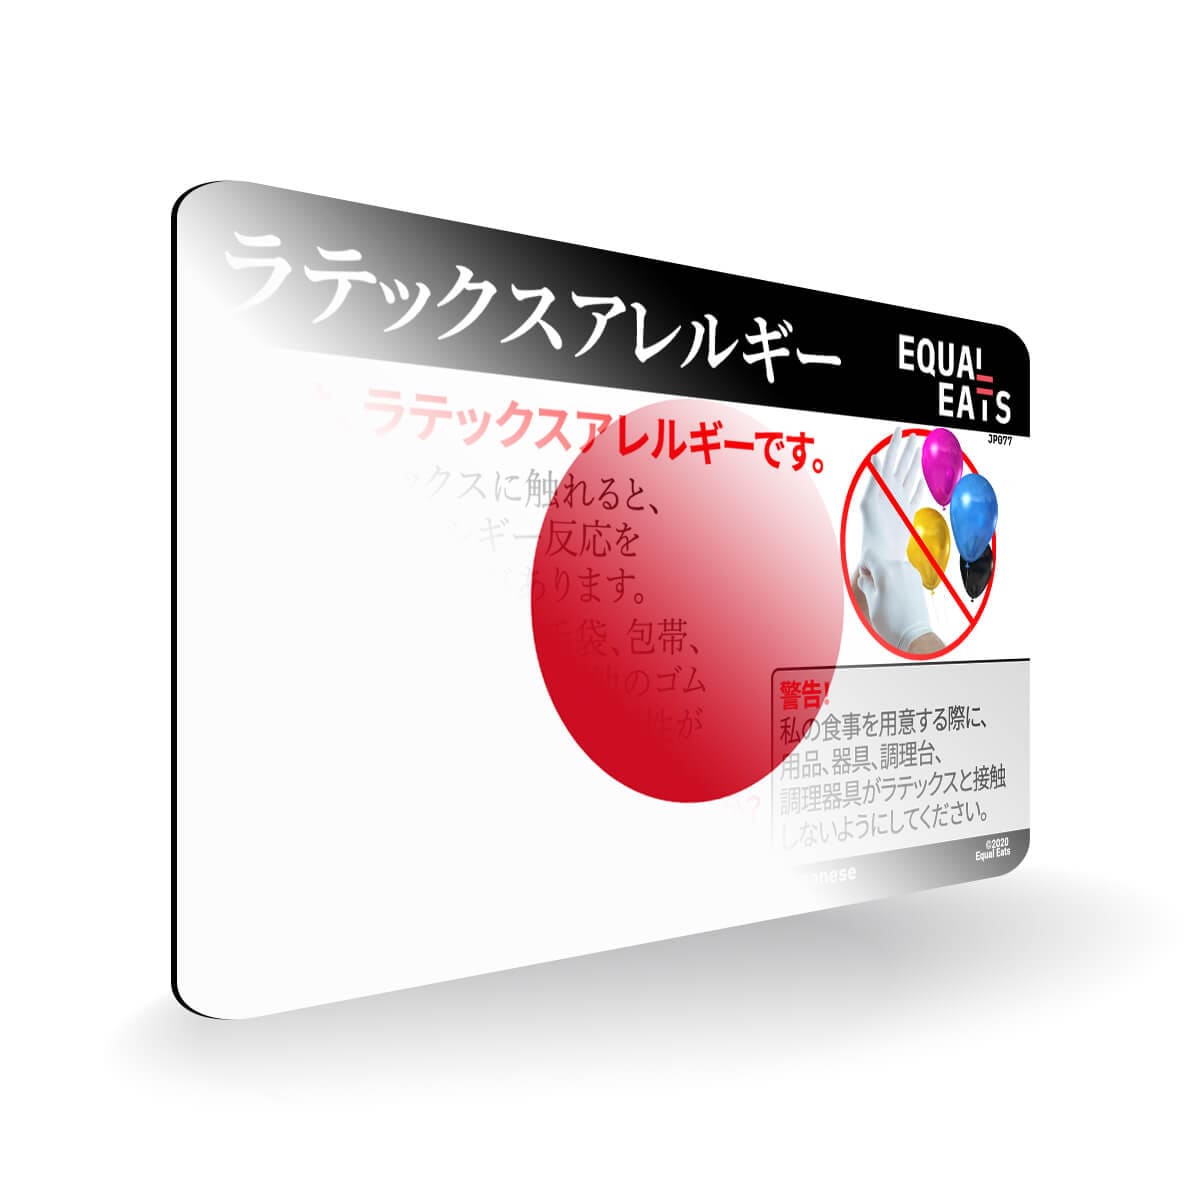 Latex Allergy in Japanese. Latex Allergy Travel Card for Japan